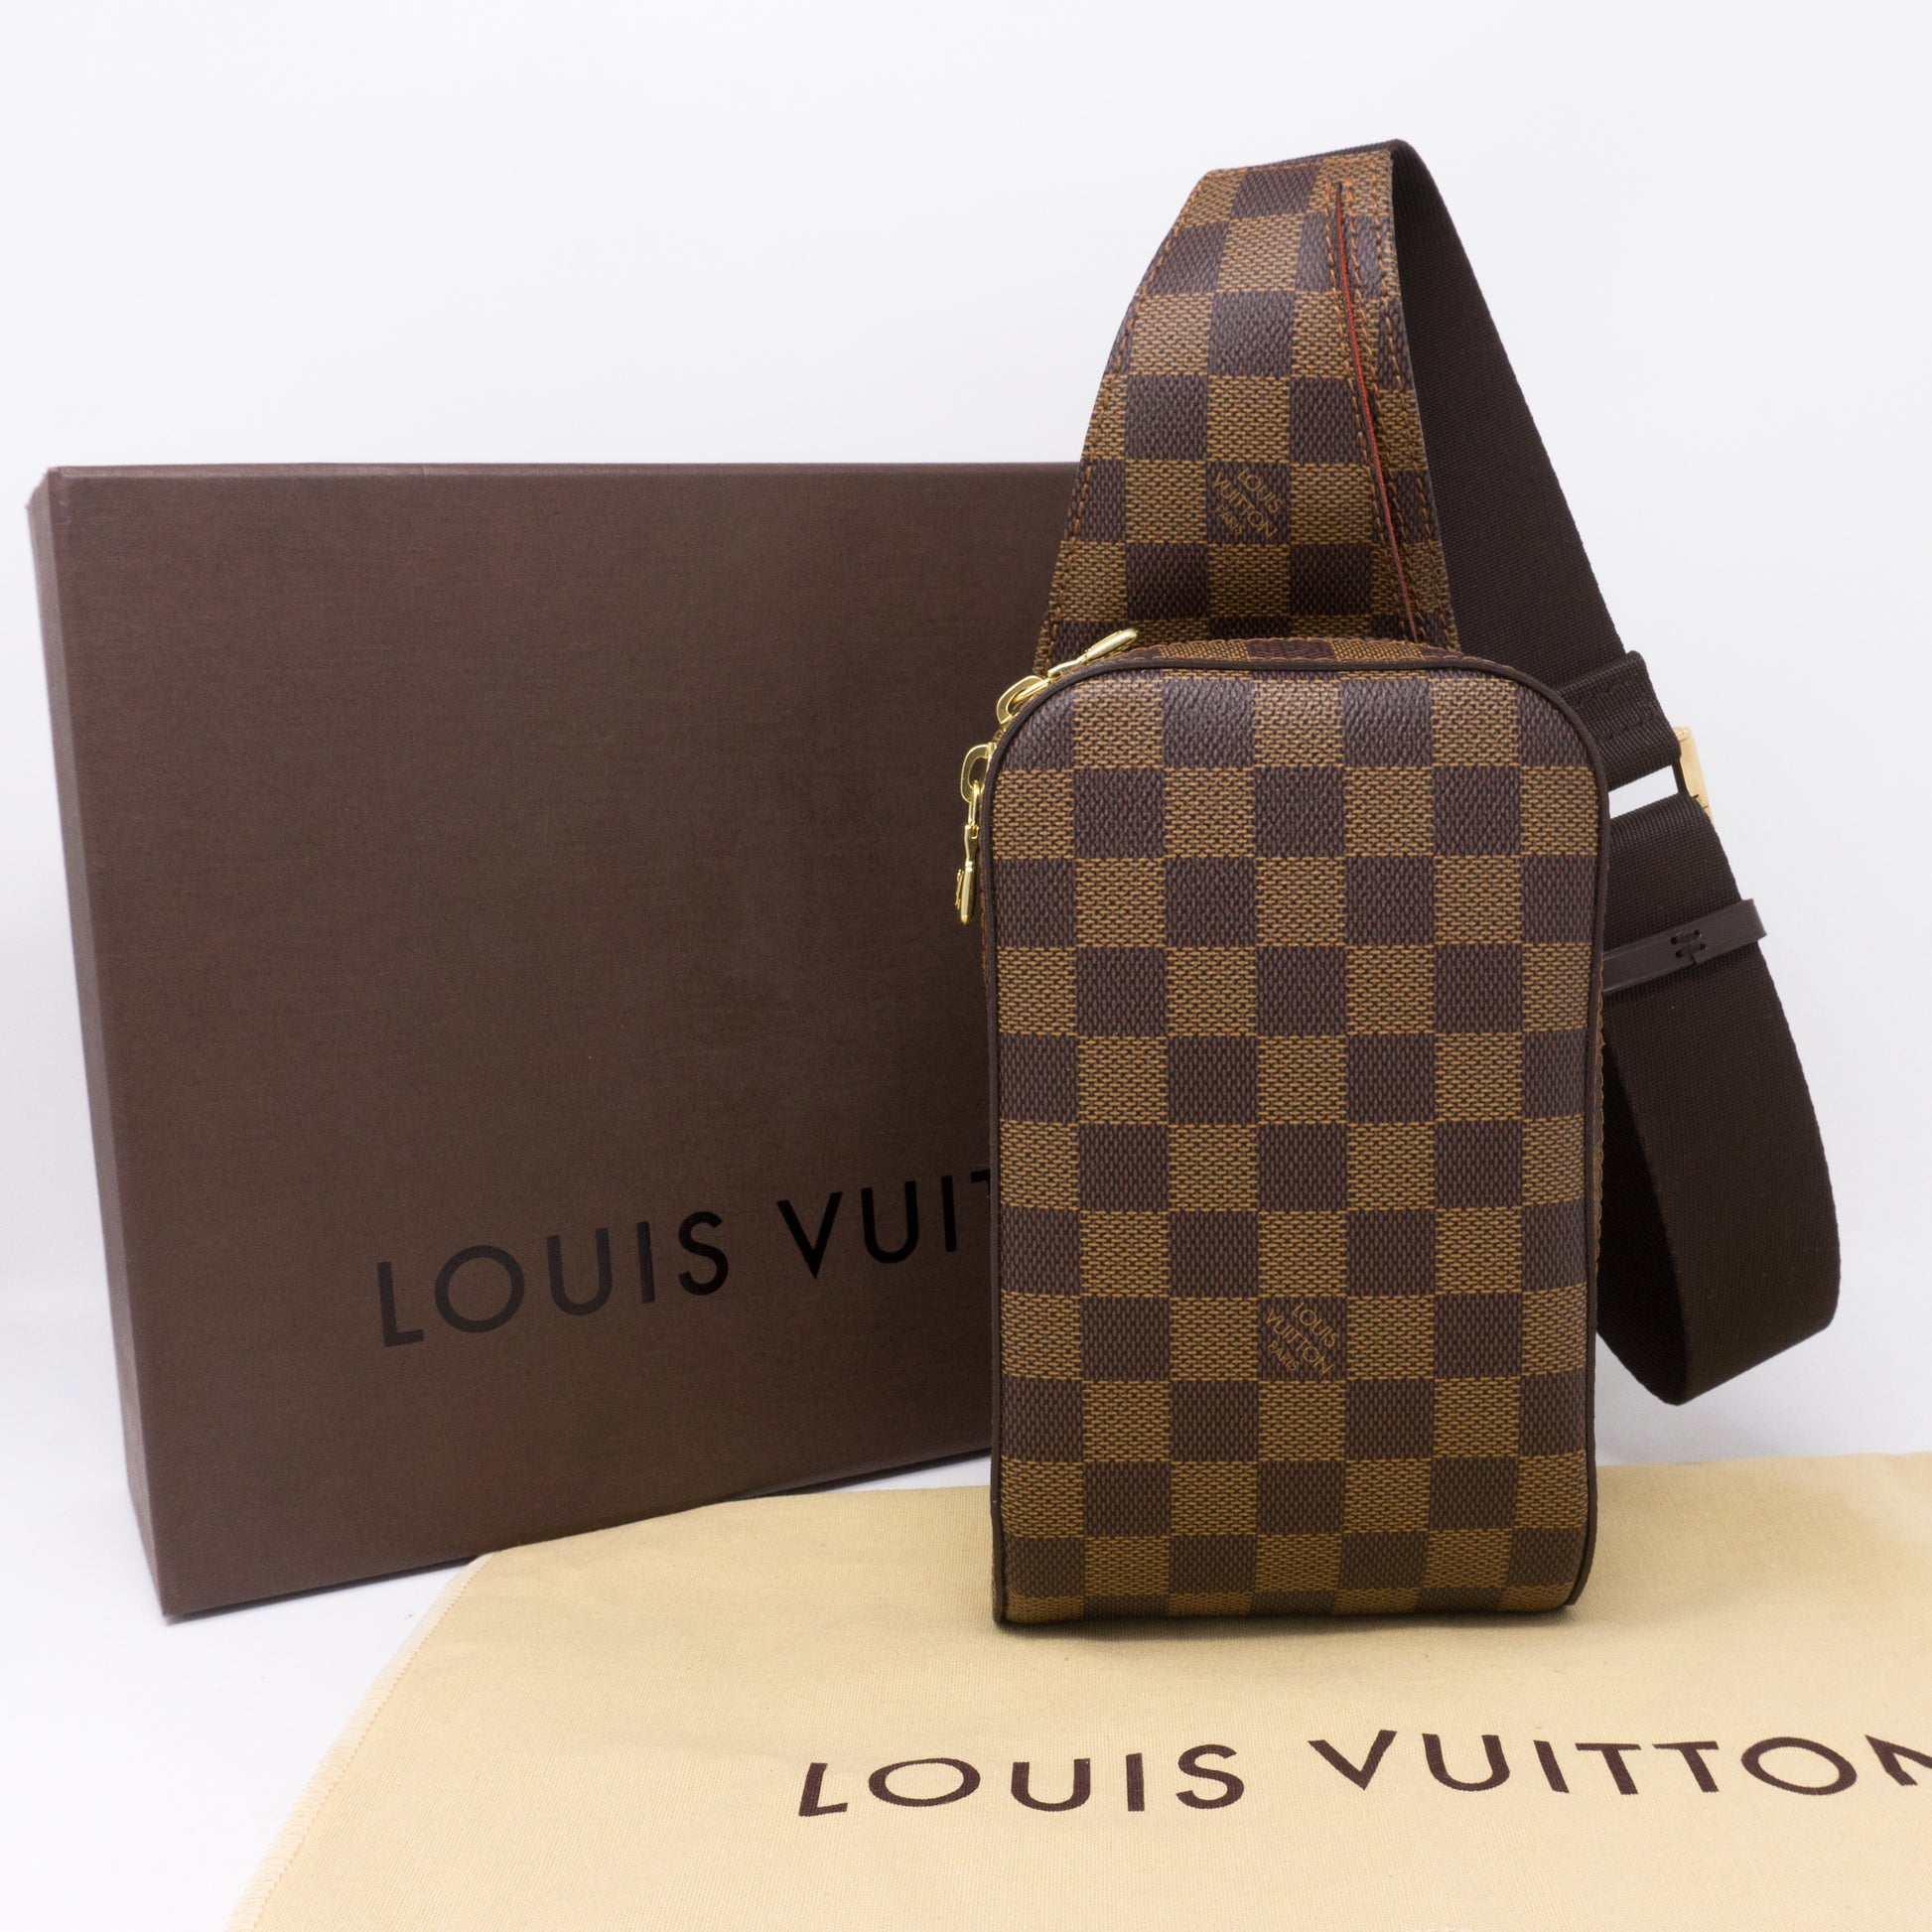 Louis Vuitton Damier Ebene Geronimos Crossbody Bag RRP £1950 – V